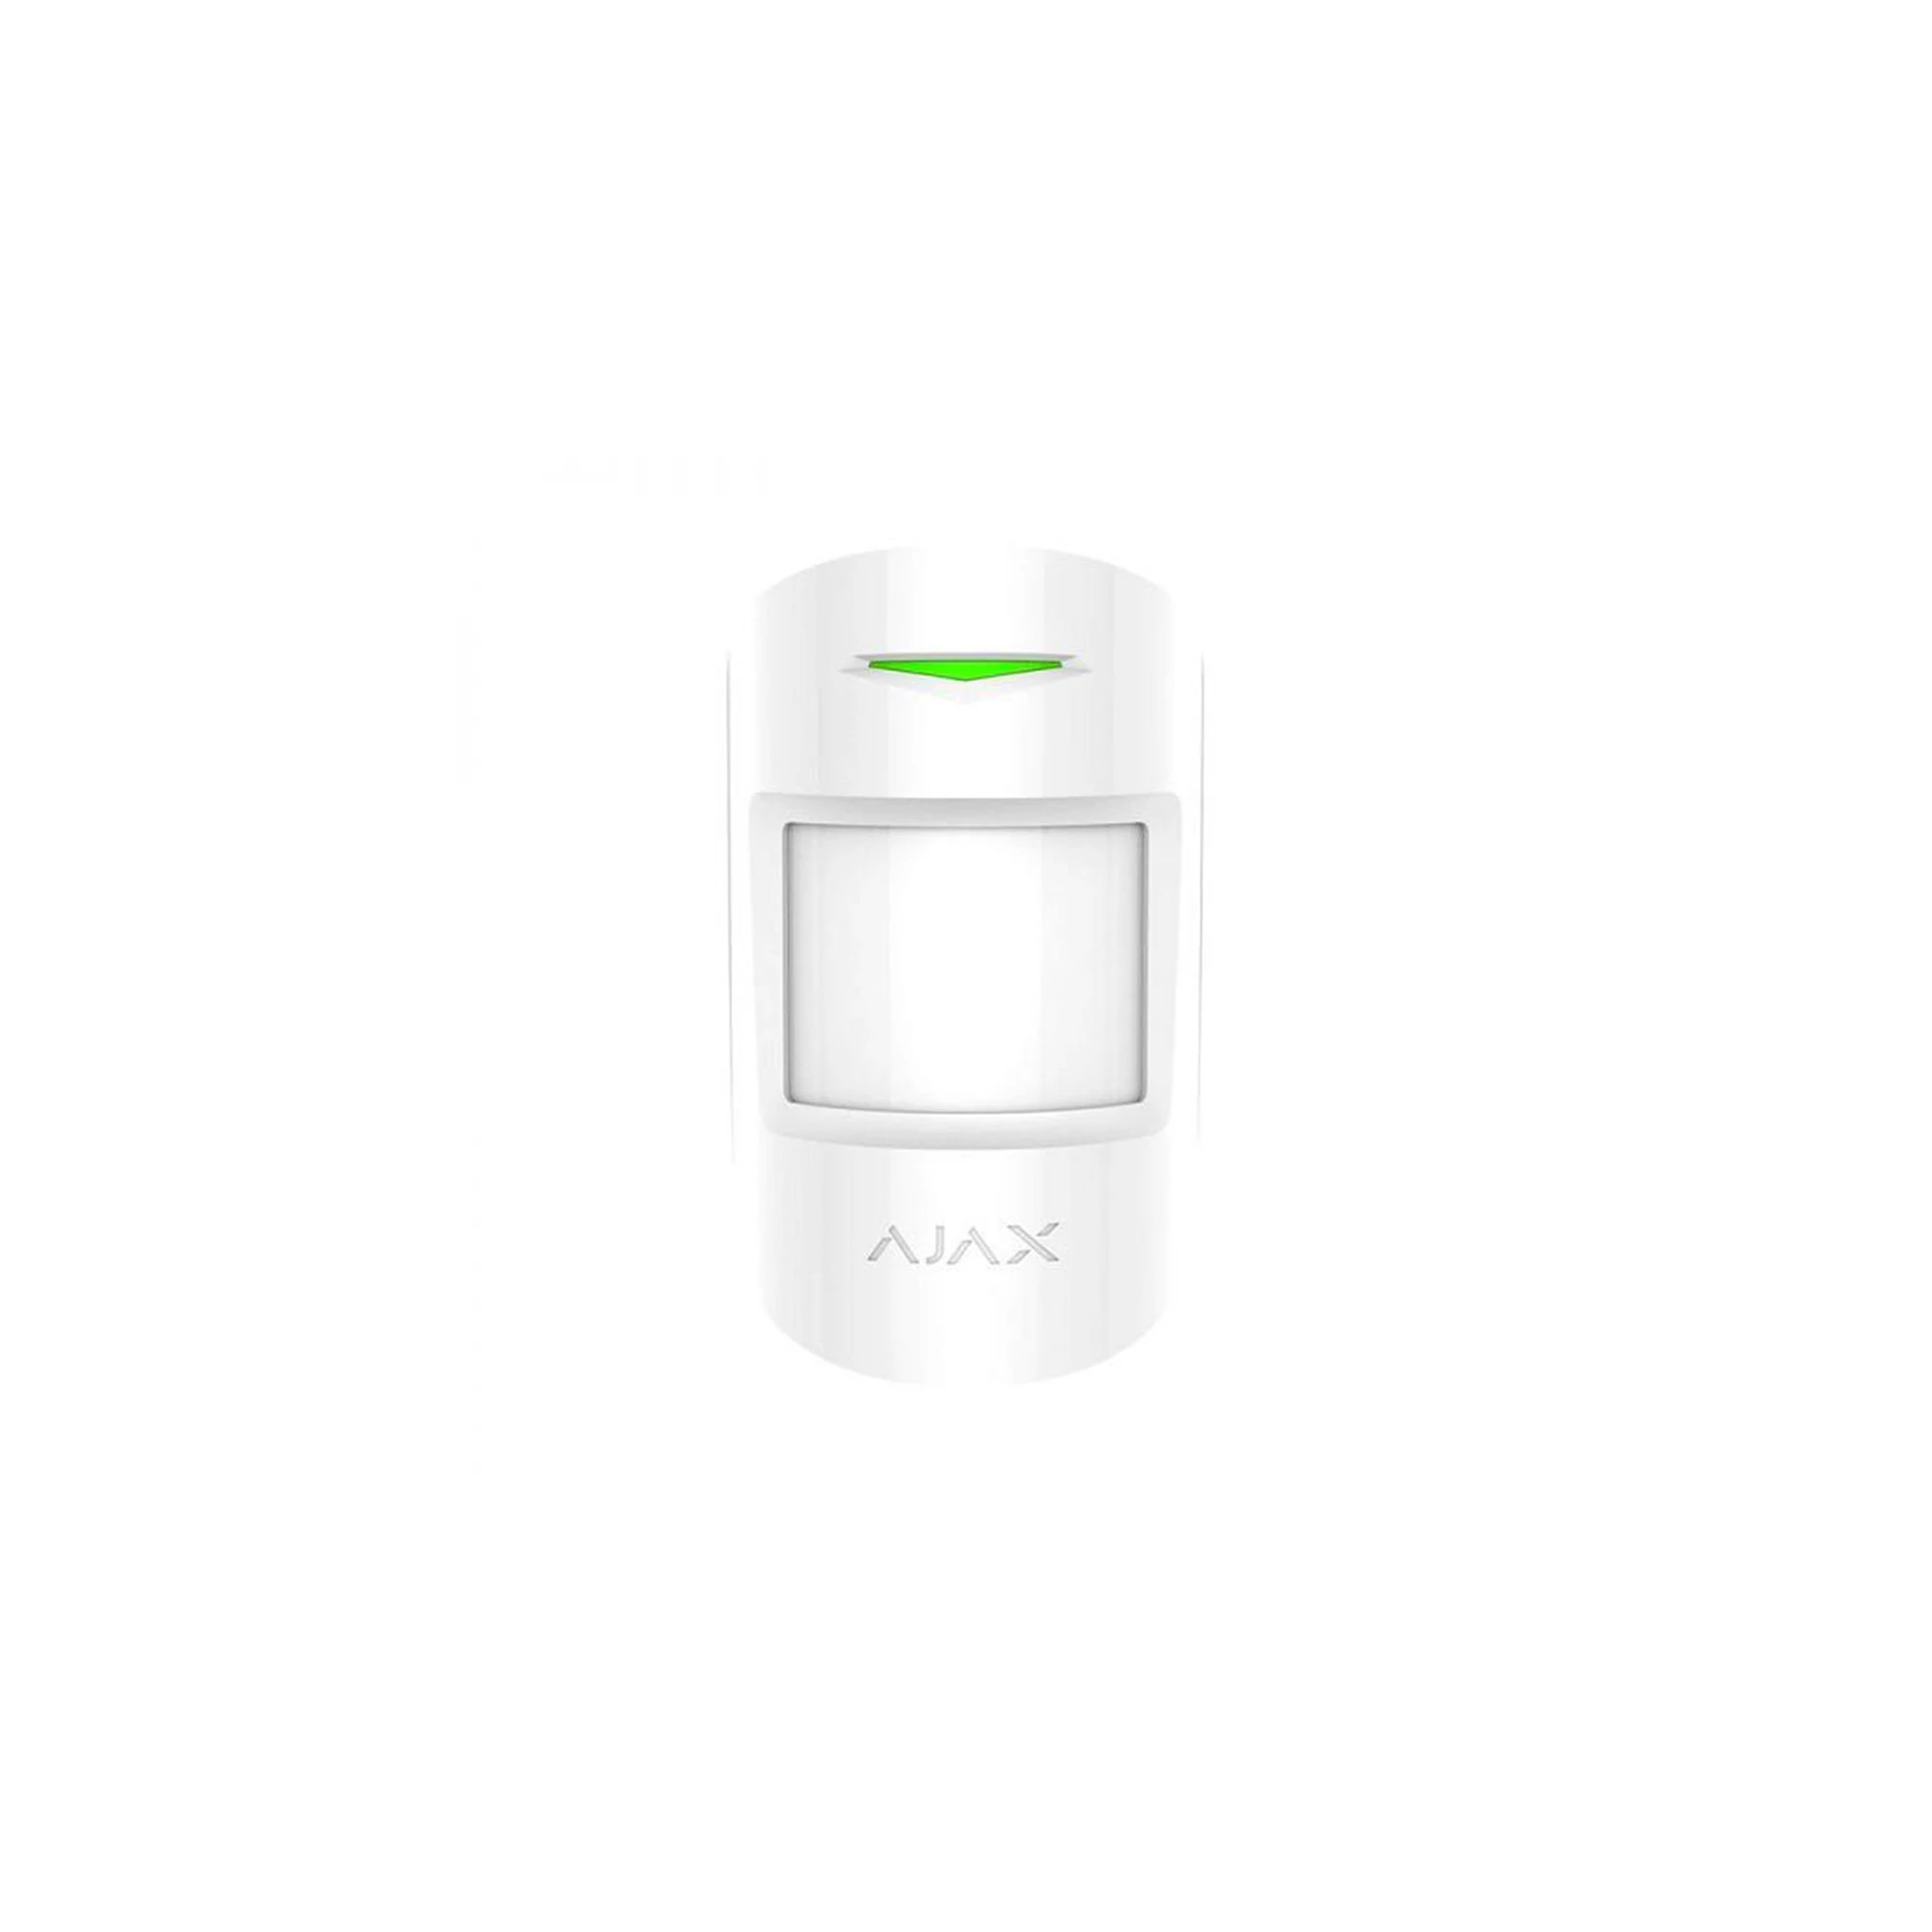 Ajax MotionProtect White - беспроводной датчик движения